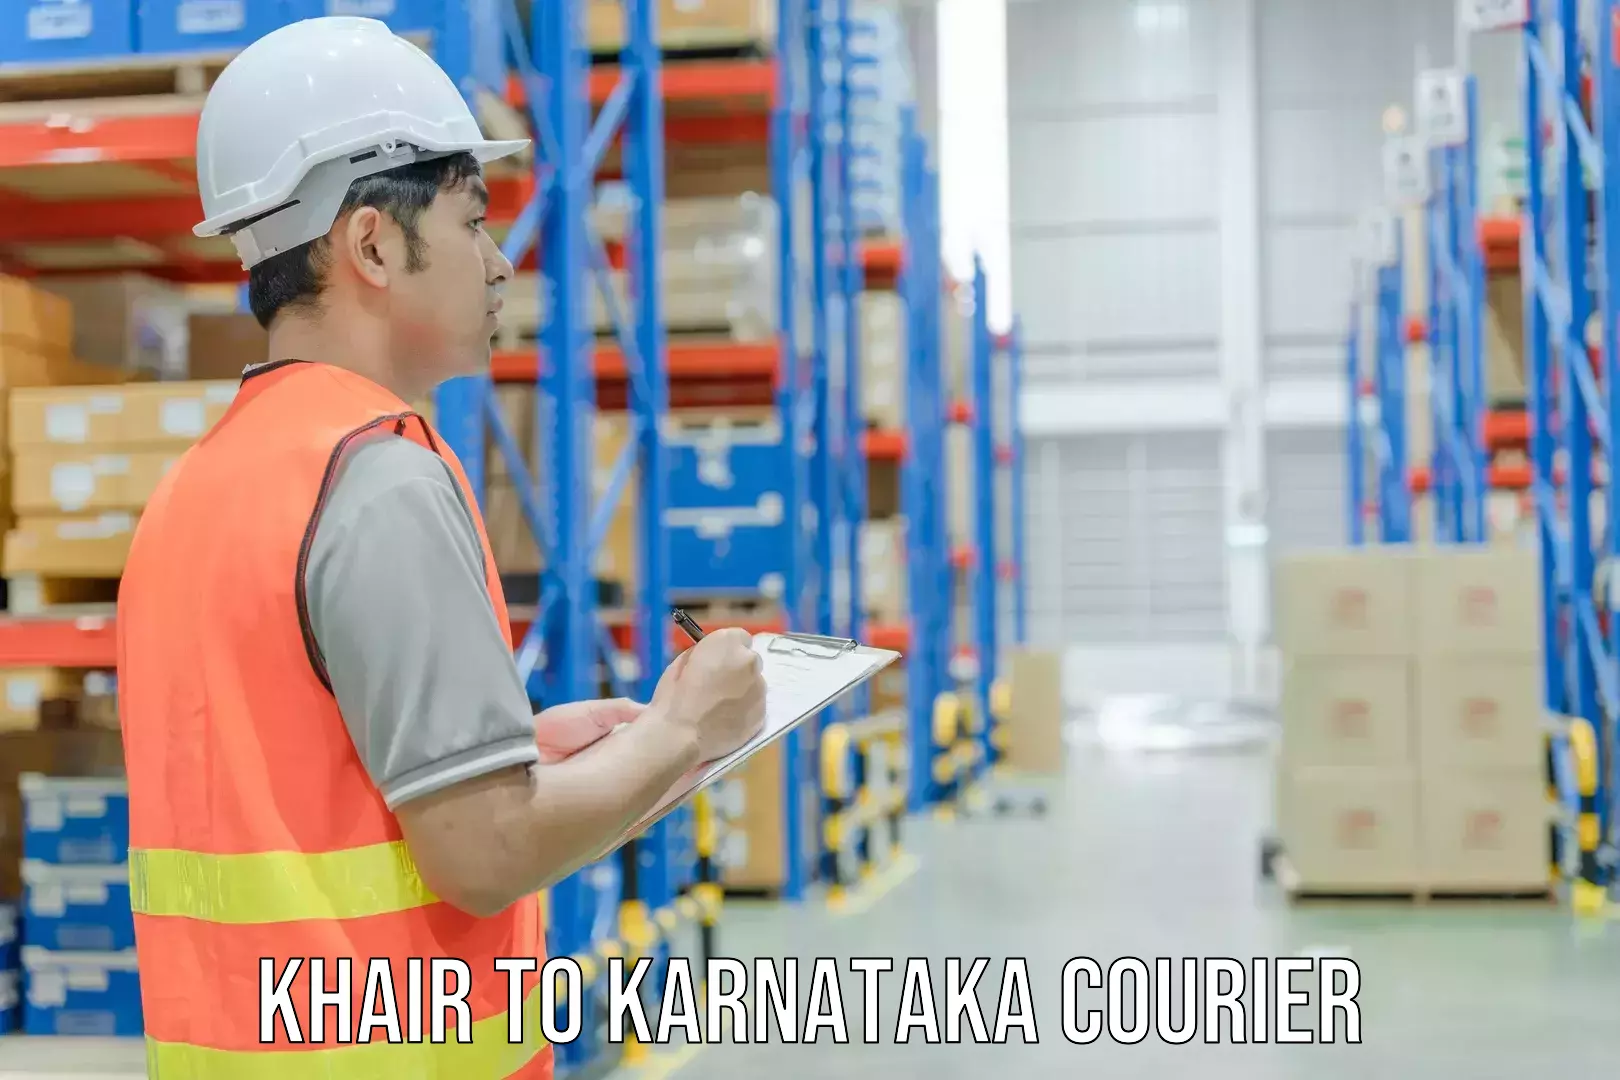 Parcel service for businesses Khair to Bangalore